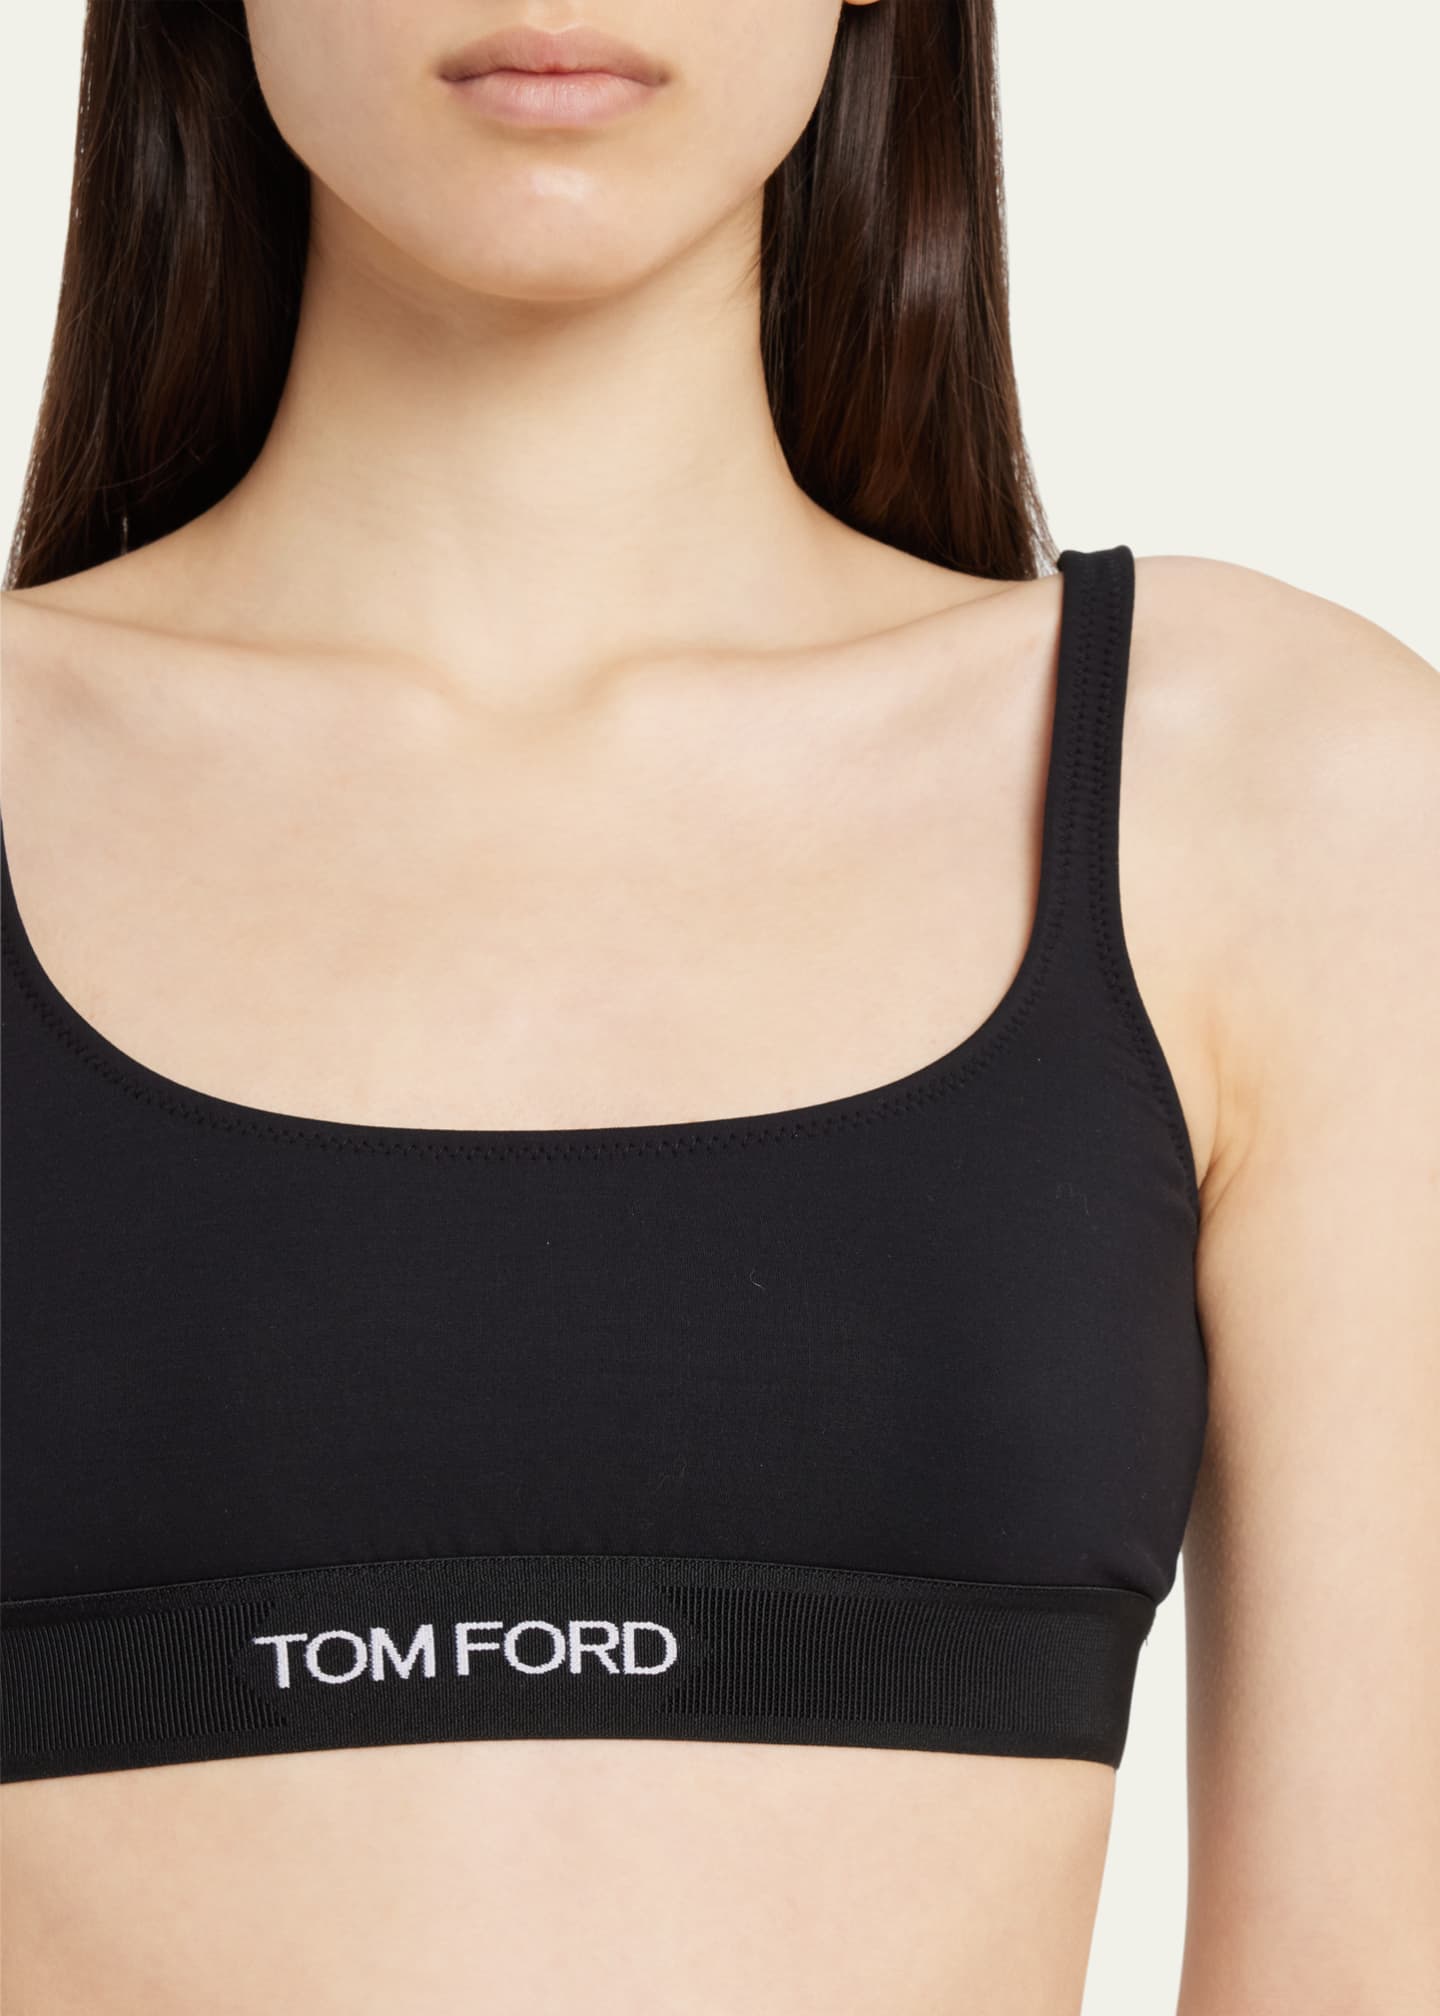 logo-underband bra, TOM FORD